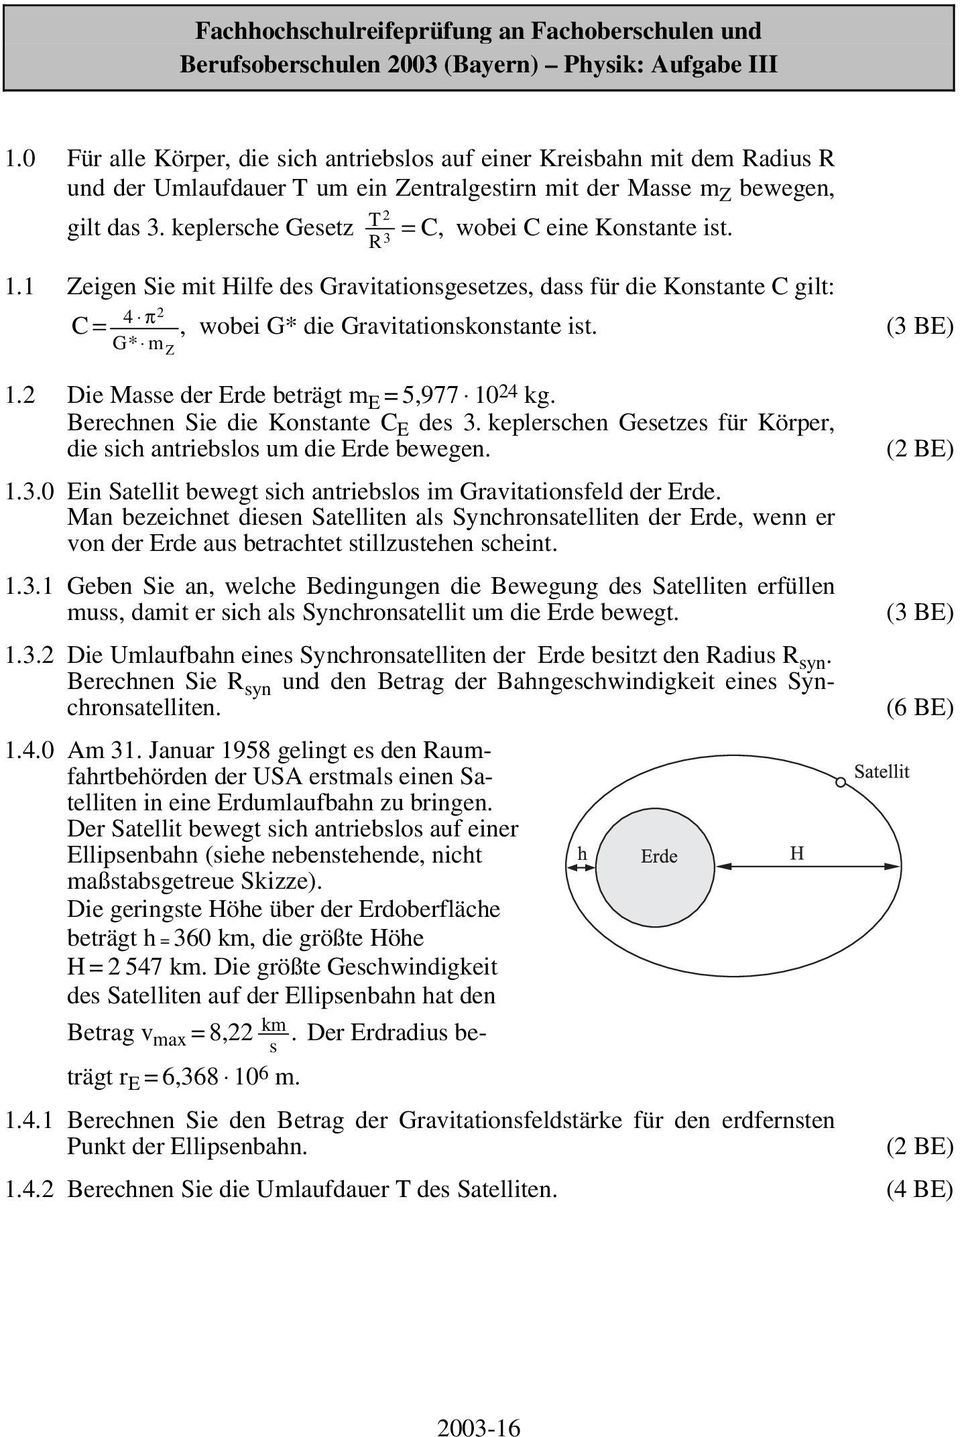 Fachhochschulreifeprufung An Fachoberschulen Und Berufsoberschulen 03 Bayern Physik Aufgabe Iii Pdf Free Download